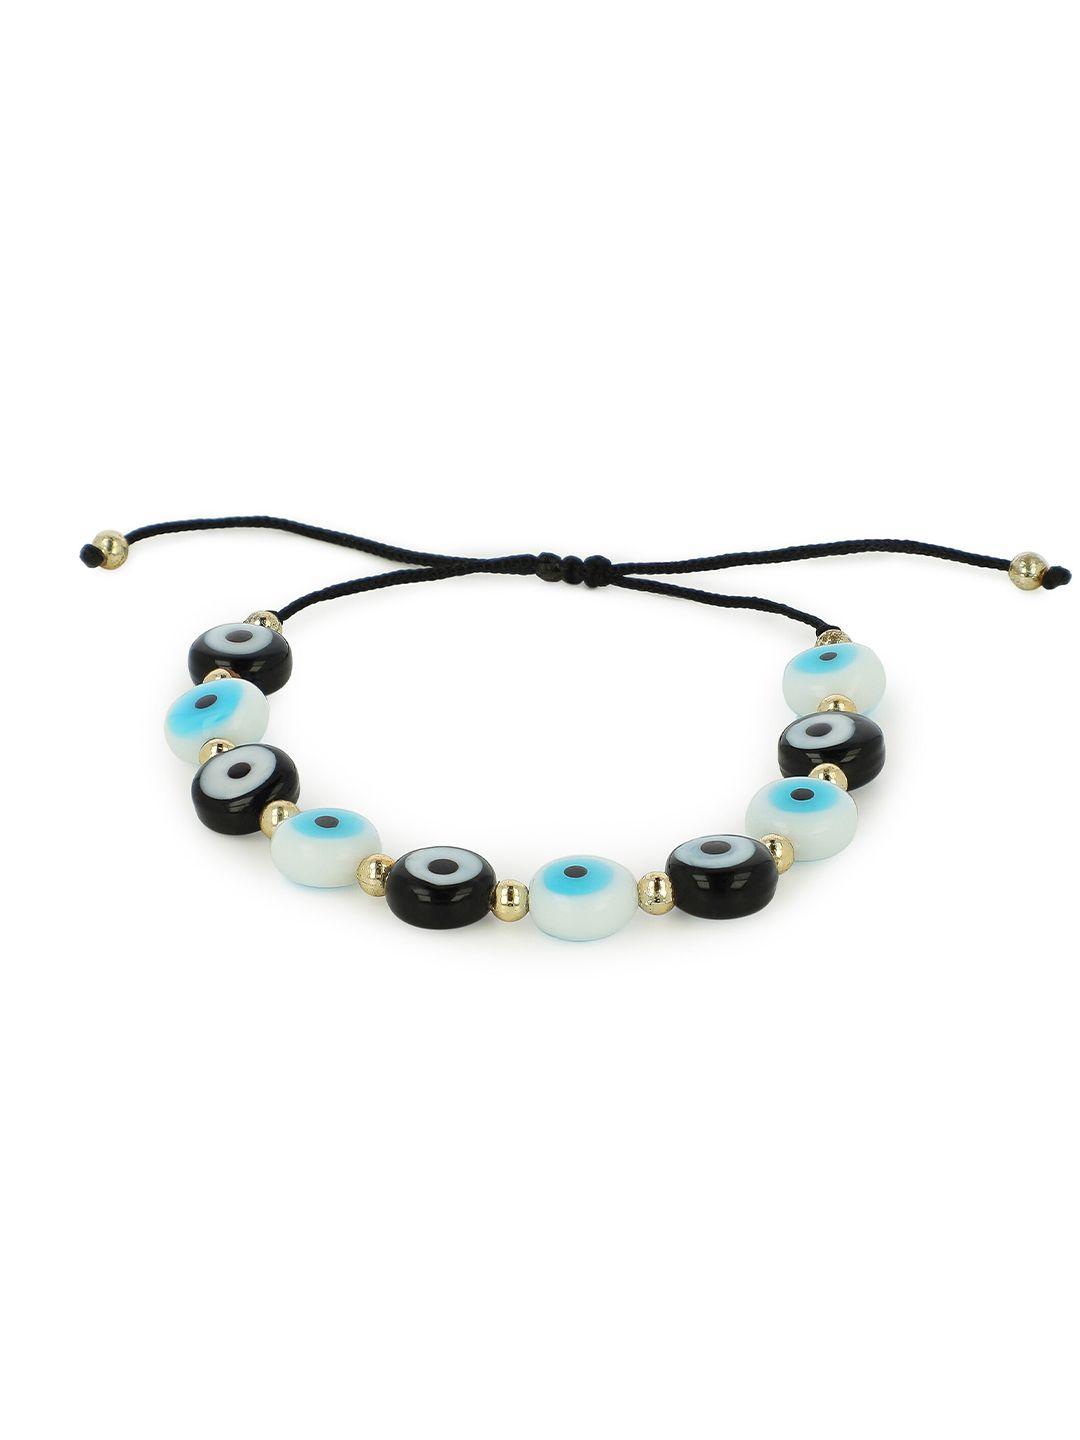 el regalo unisex blue & white handcrafted charm bracelet